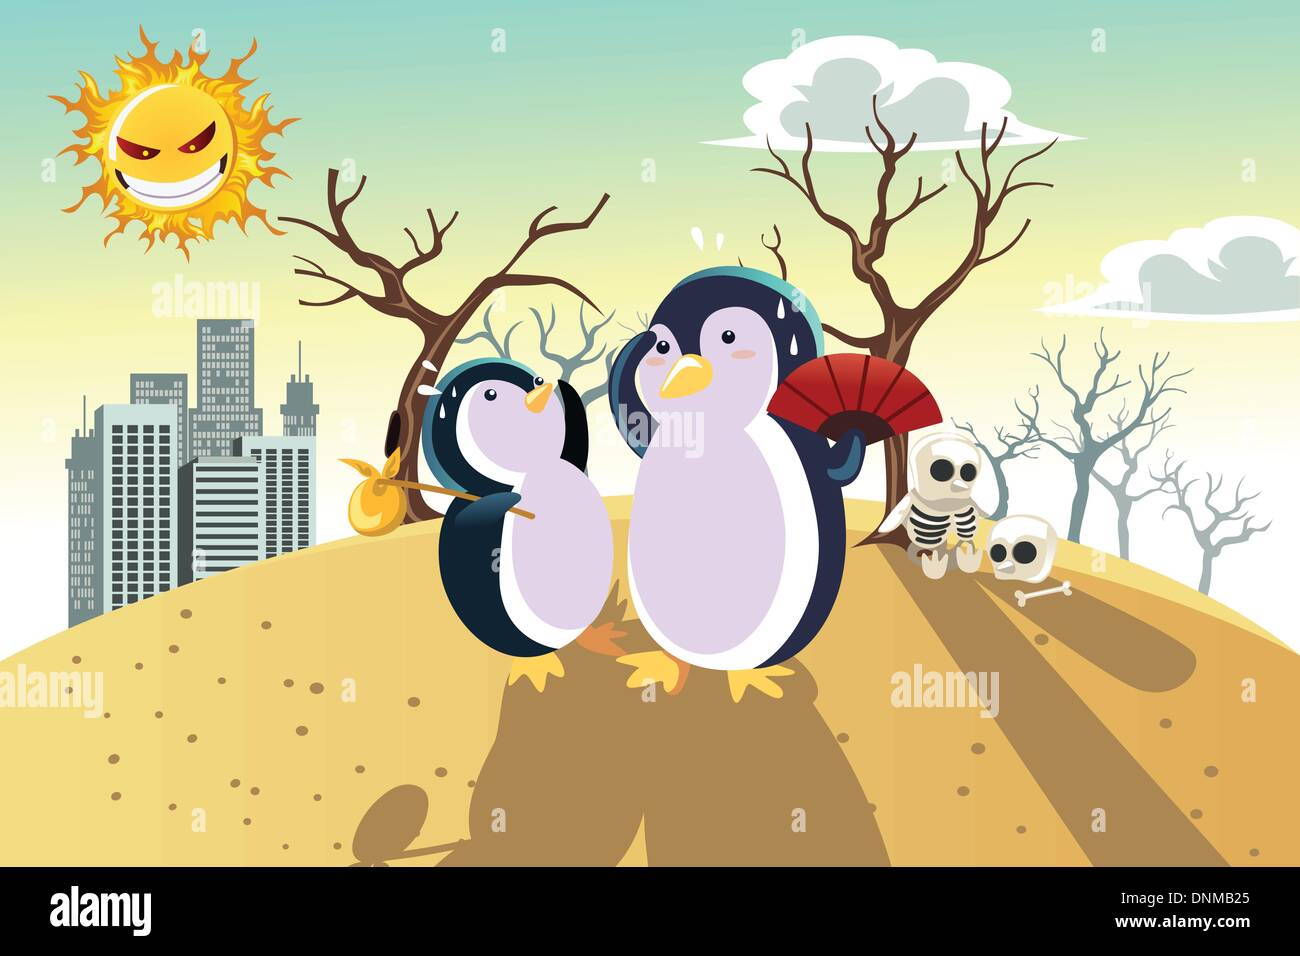 Un vecteur illustration d'un réchauffement global concept, avec des pingouins sur une terre chaude et sèche Illustration de Vecteur